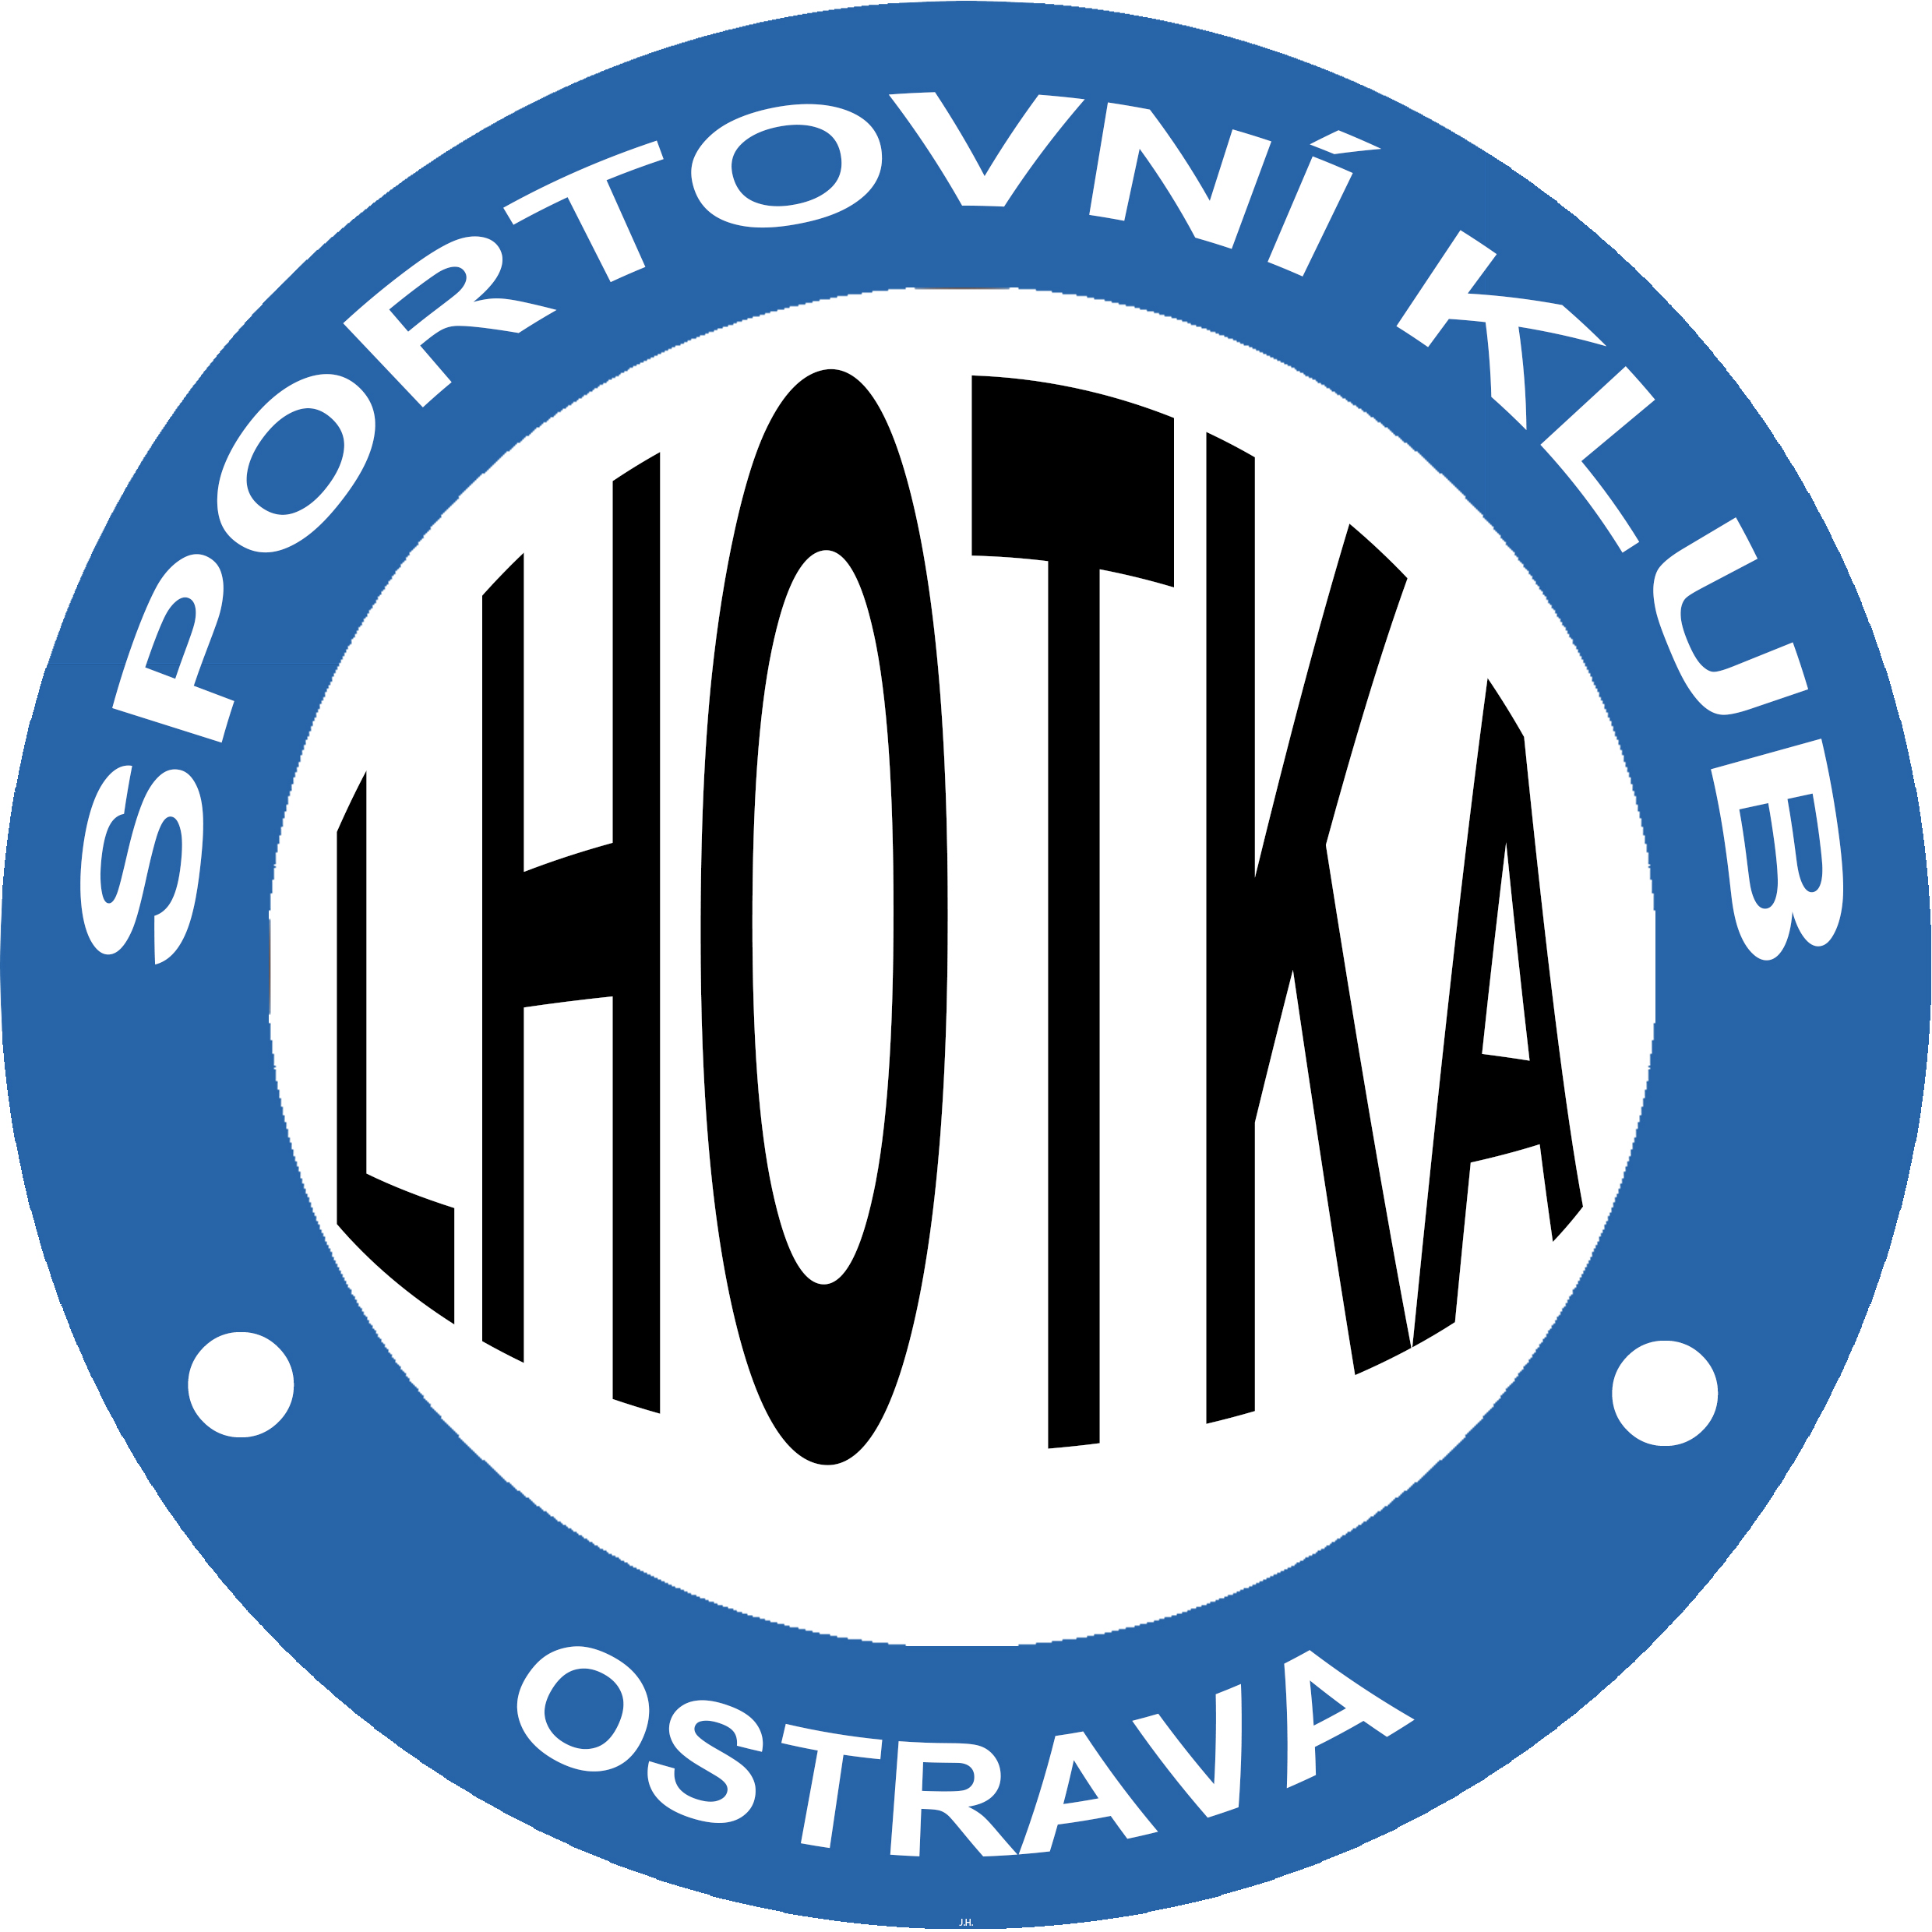 SK Ostrava Lhotka, z.s.